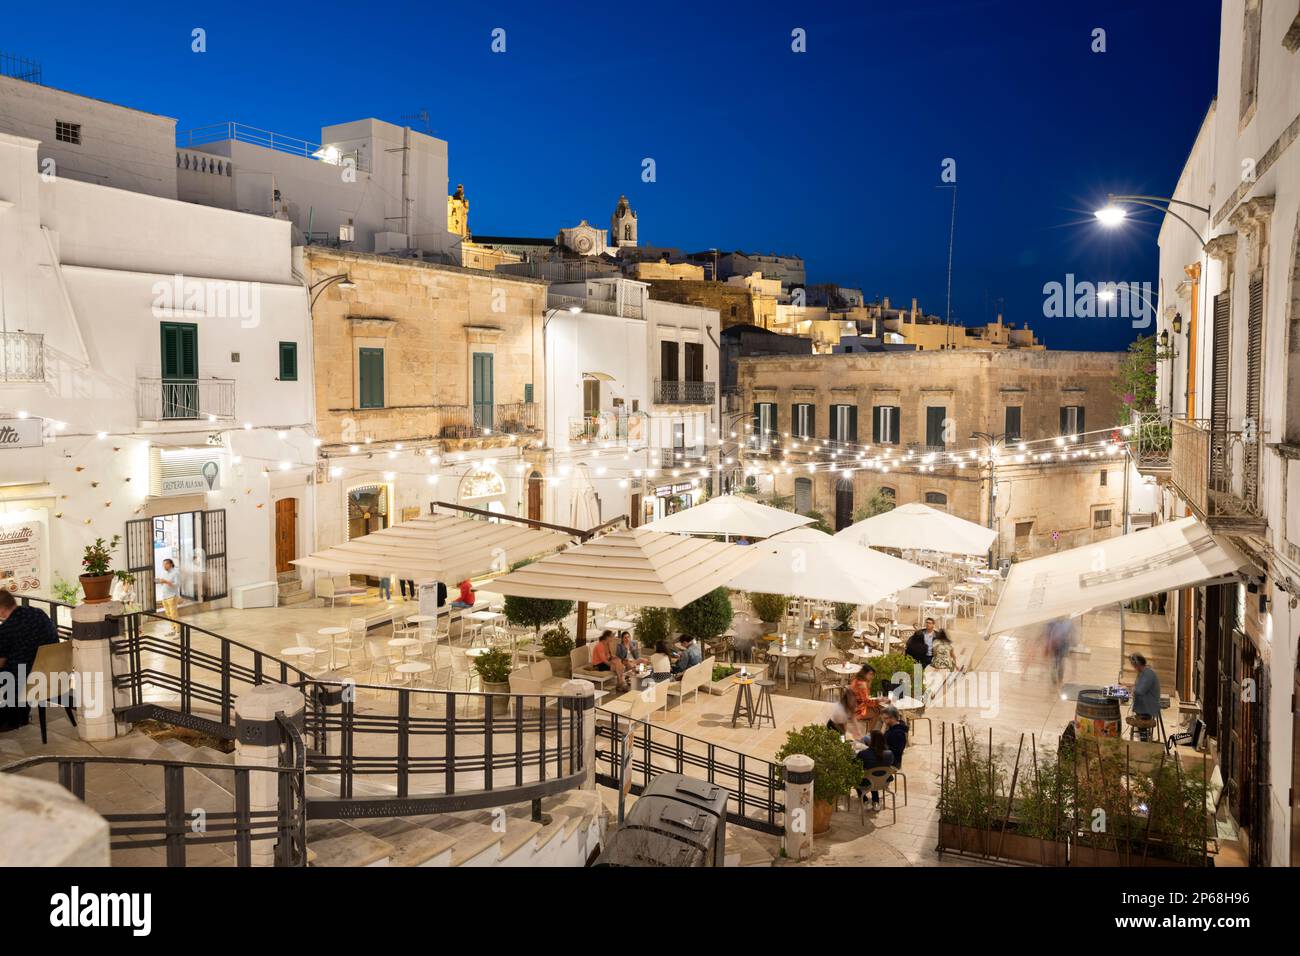 Ristoranti illuminati di sera in Piazza della libertà, Ostuni, provincia di Brindisi, Puglia, Italia, Europa Foto Stock